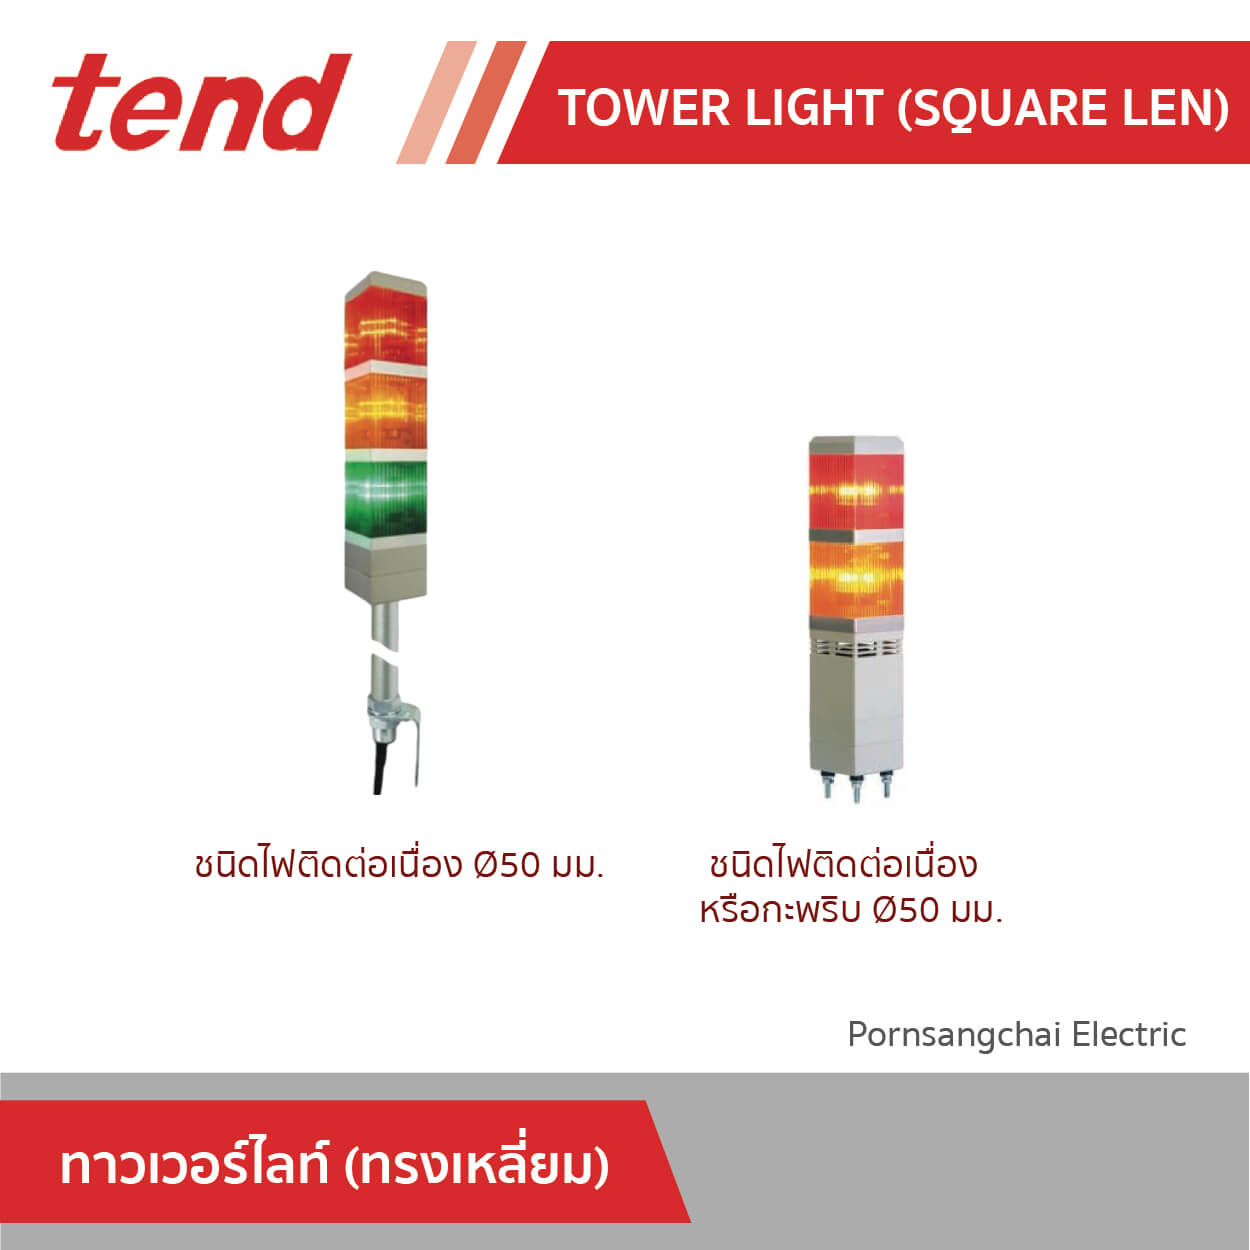 tend Tower Light (Square Len)